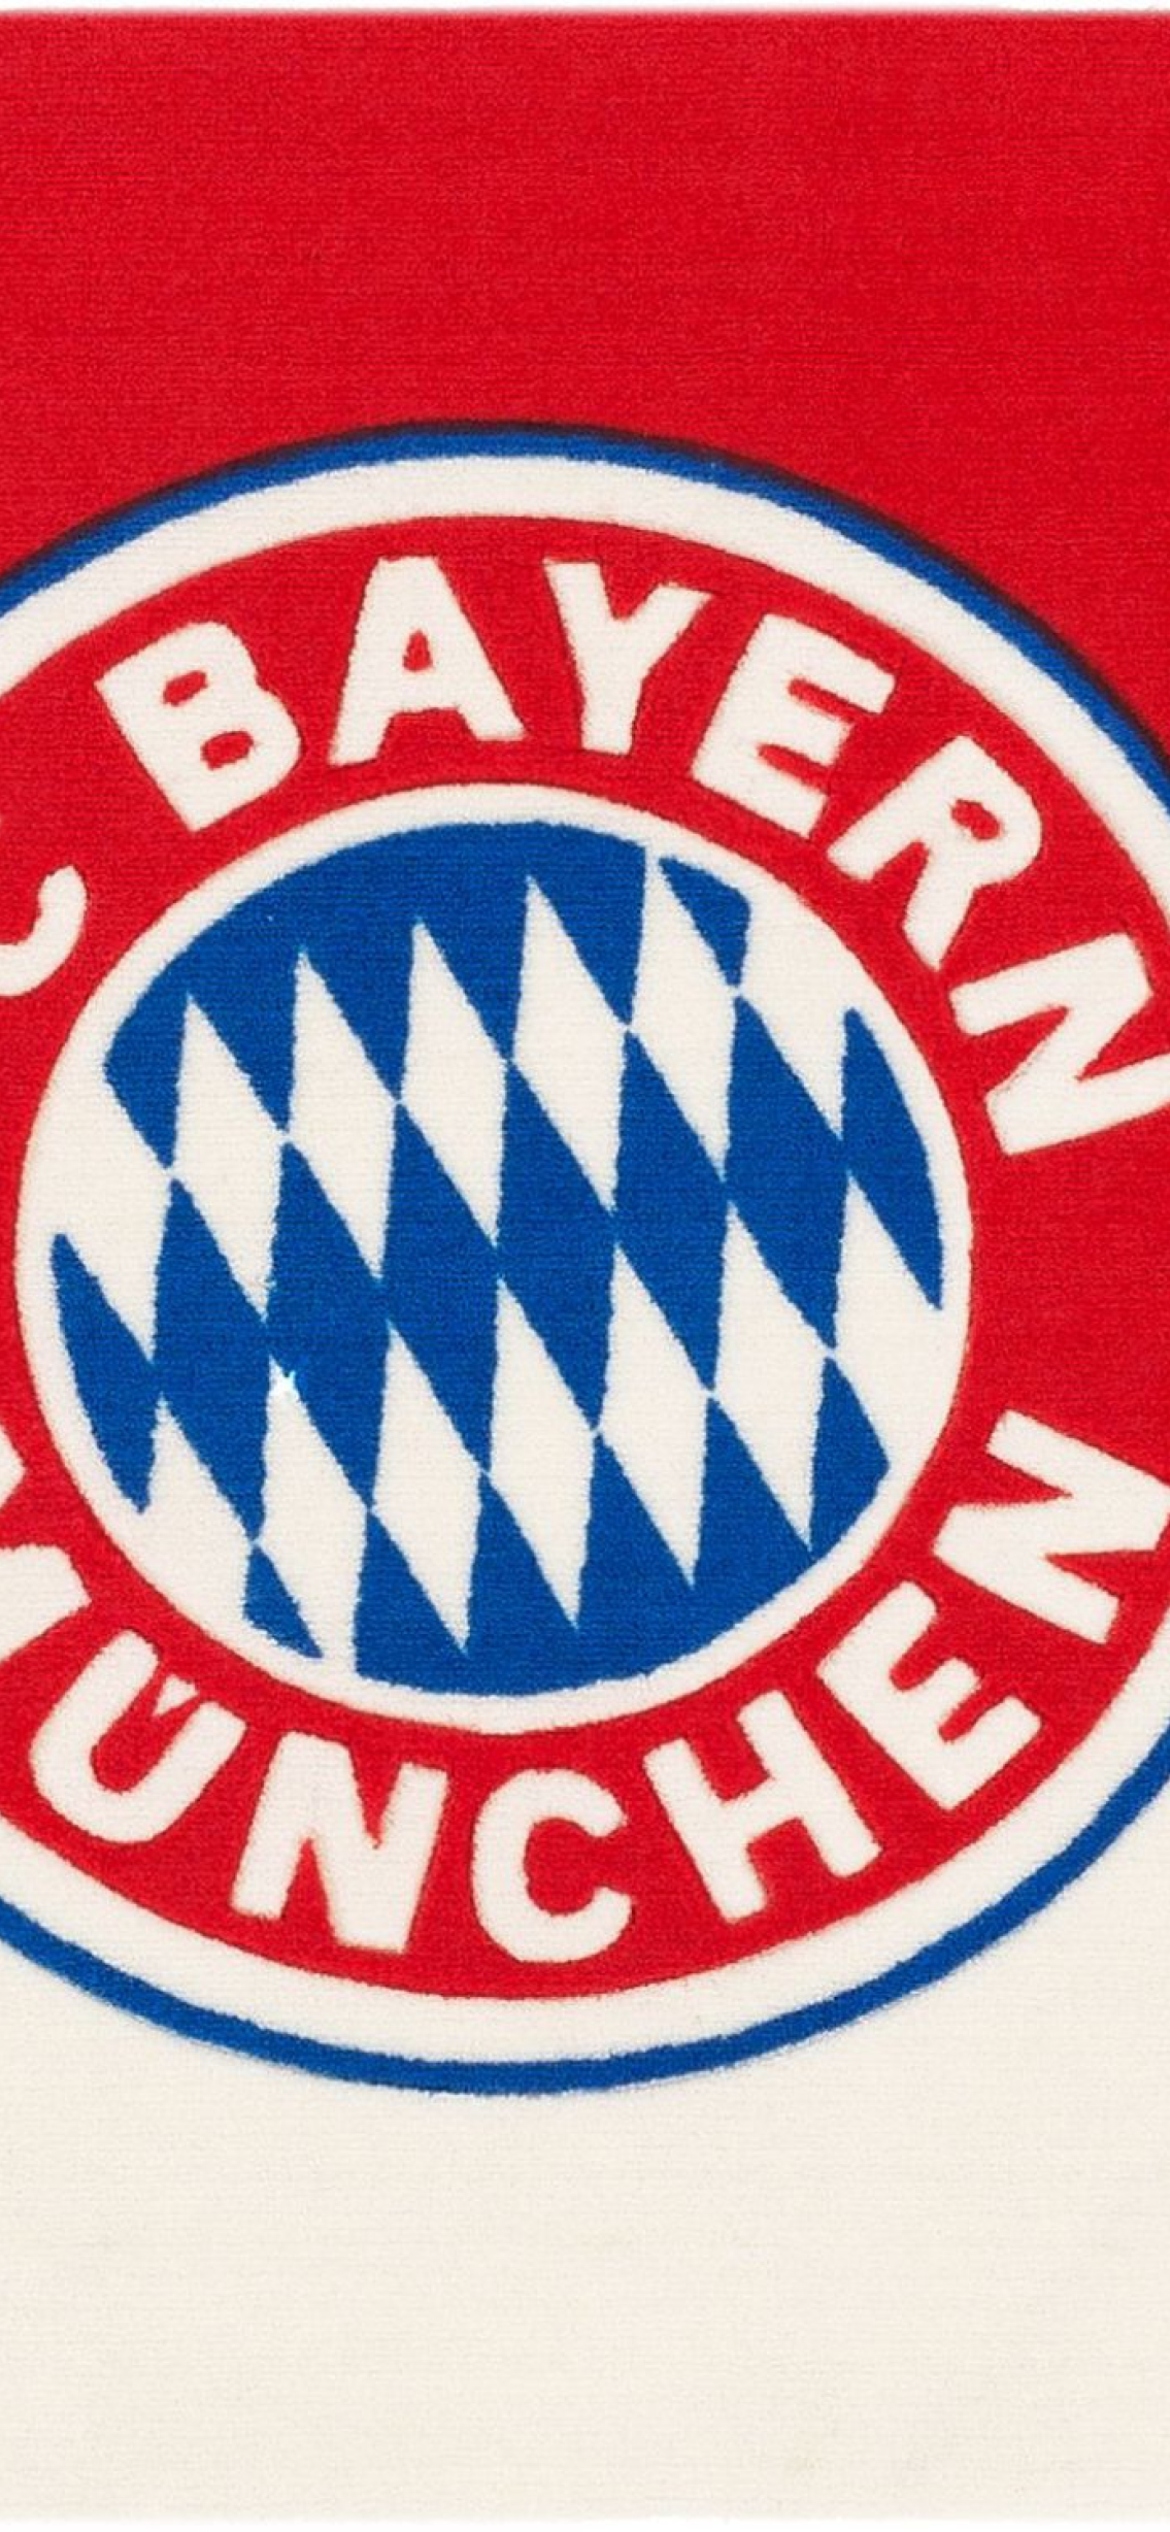 Das Fc Bayern Munchen Wallpaper 1170x2532